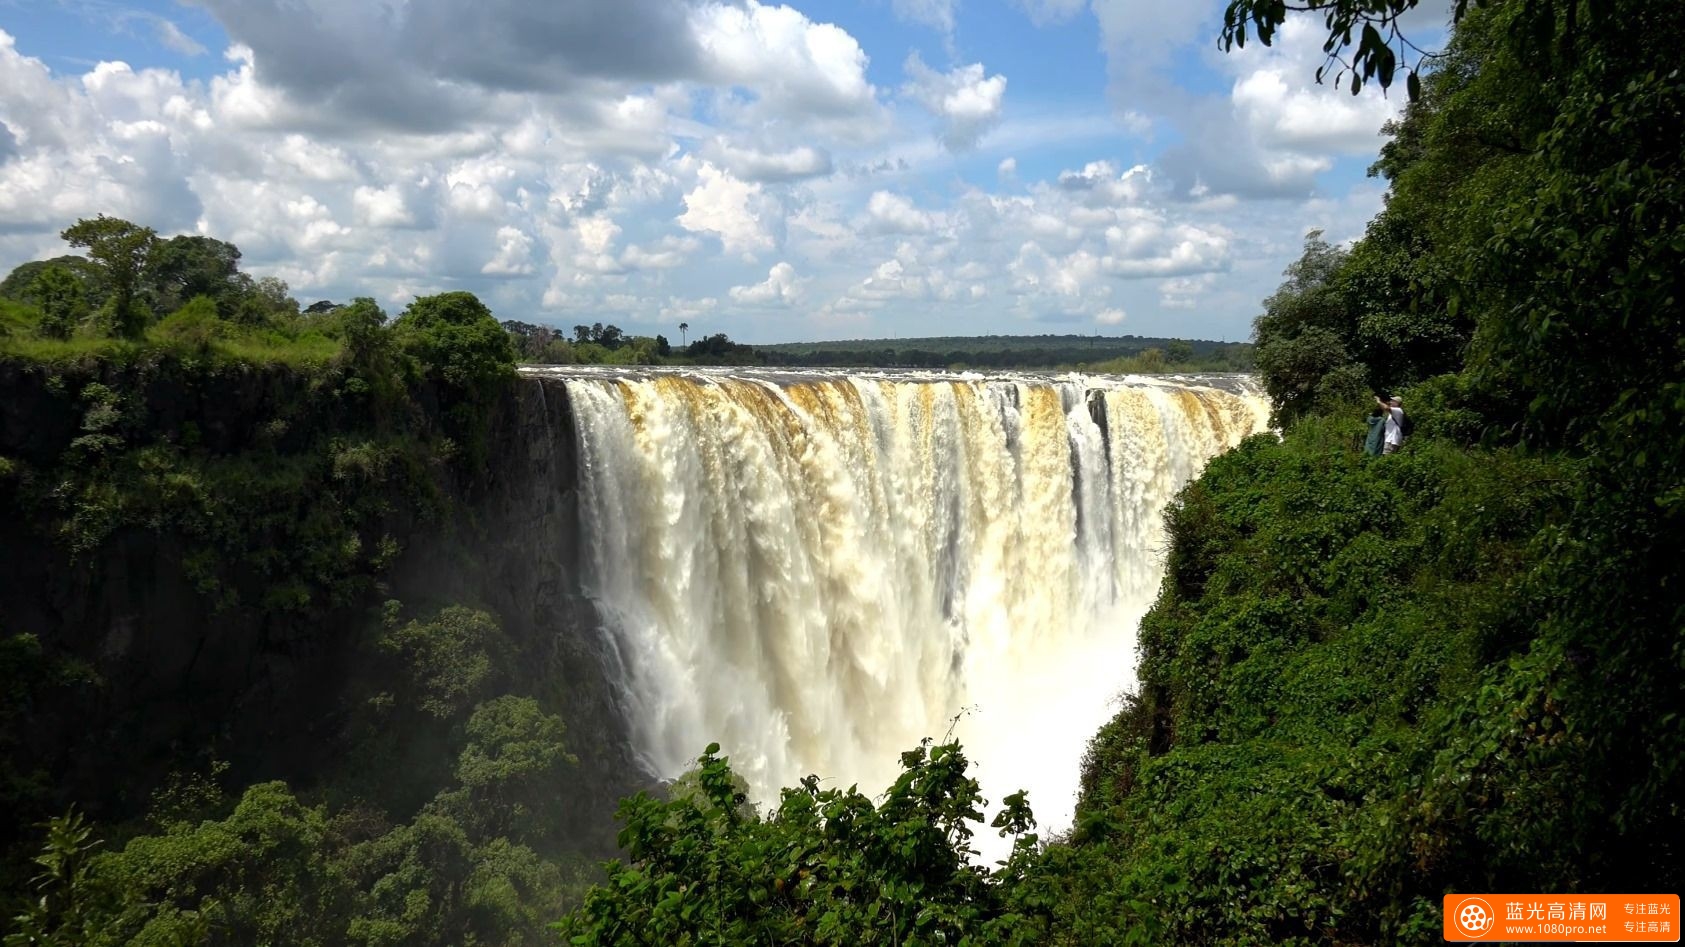 赞比亚和津巴布韦 - 维多利亚瀑布 2017Victoria Falls, Zambia & Zimbabwe in 4K Ultra HD [2160P/MKV/928MB]-9.jpg